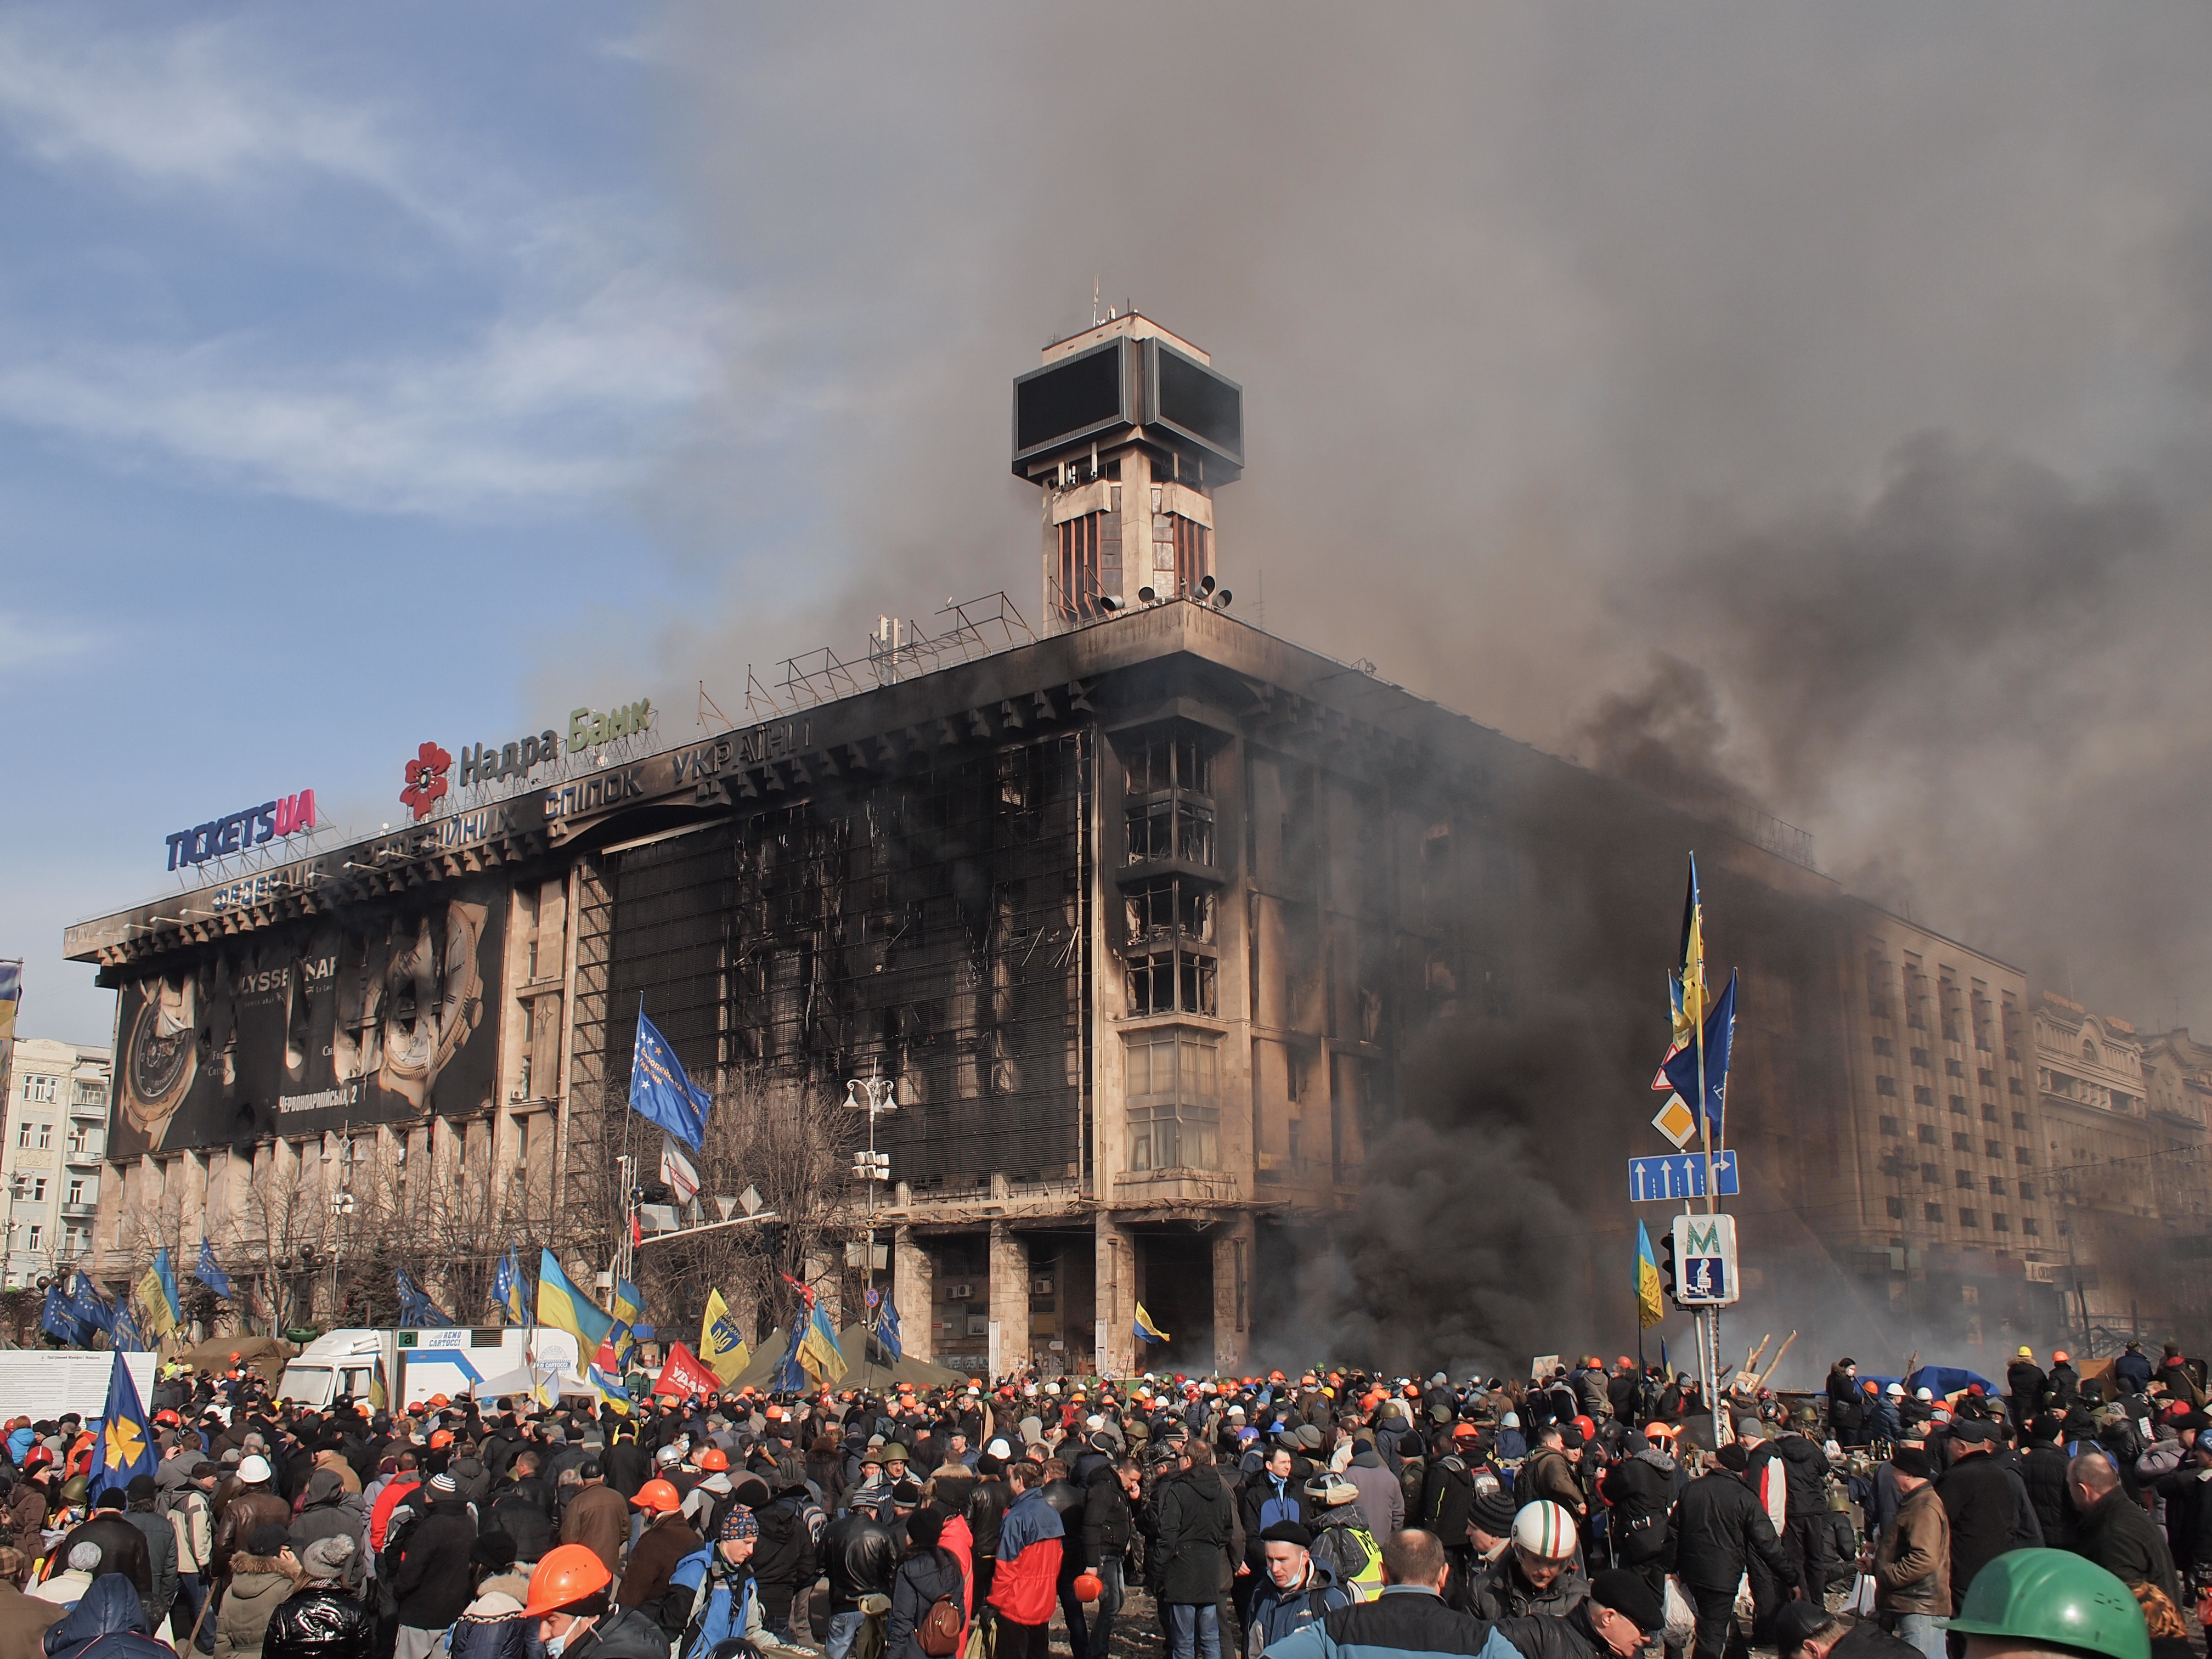 Kiev Revolution #19